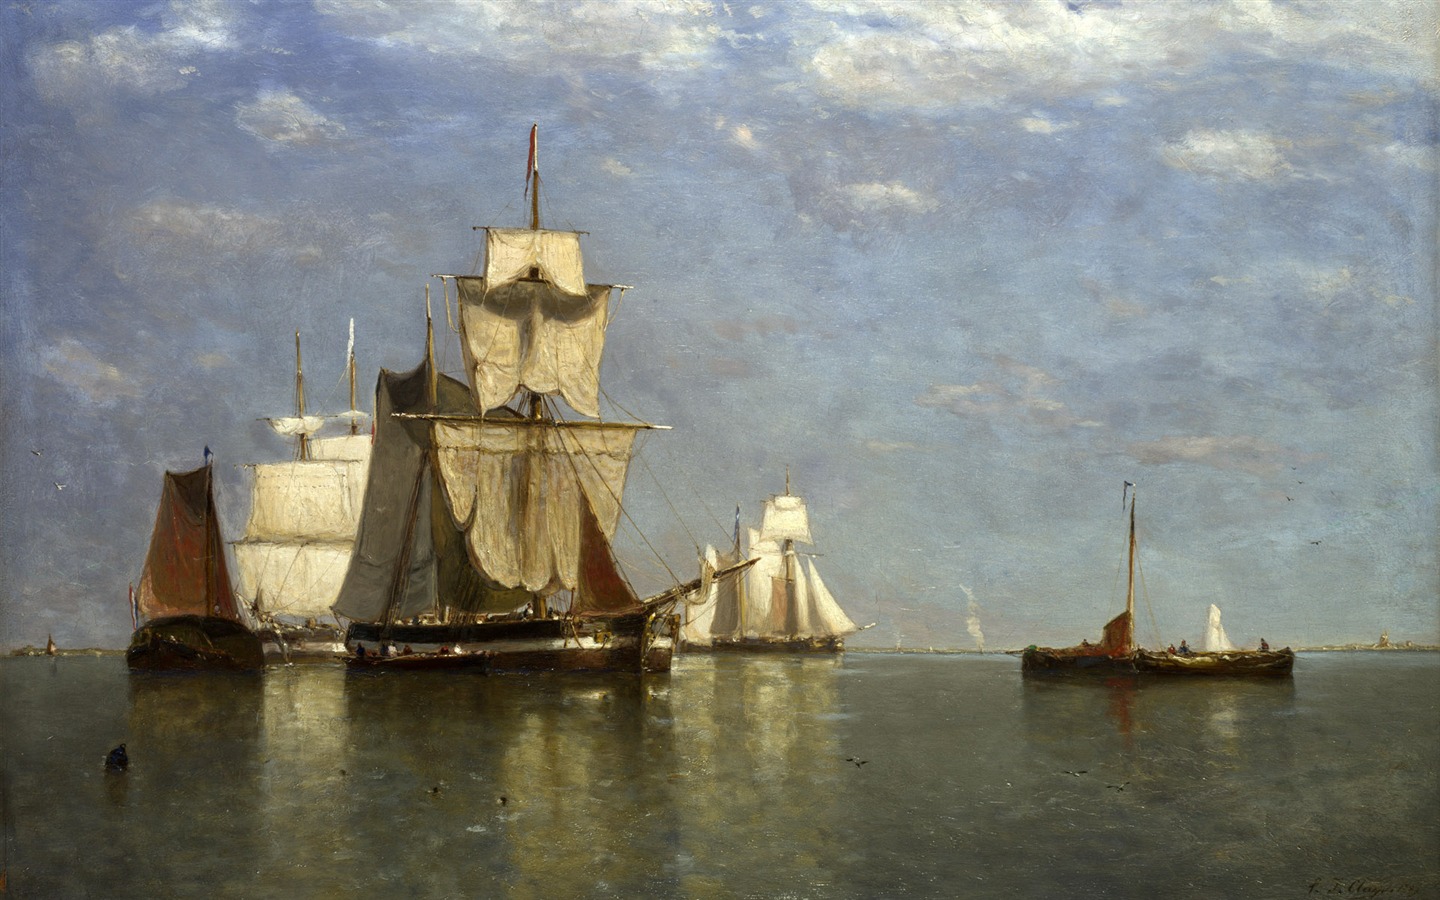 伦敦画廊帆船 壁纸(二)11 - 1440x900